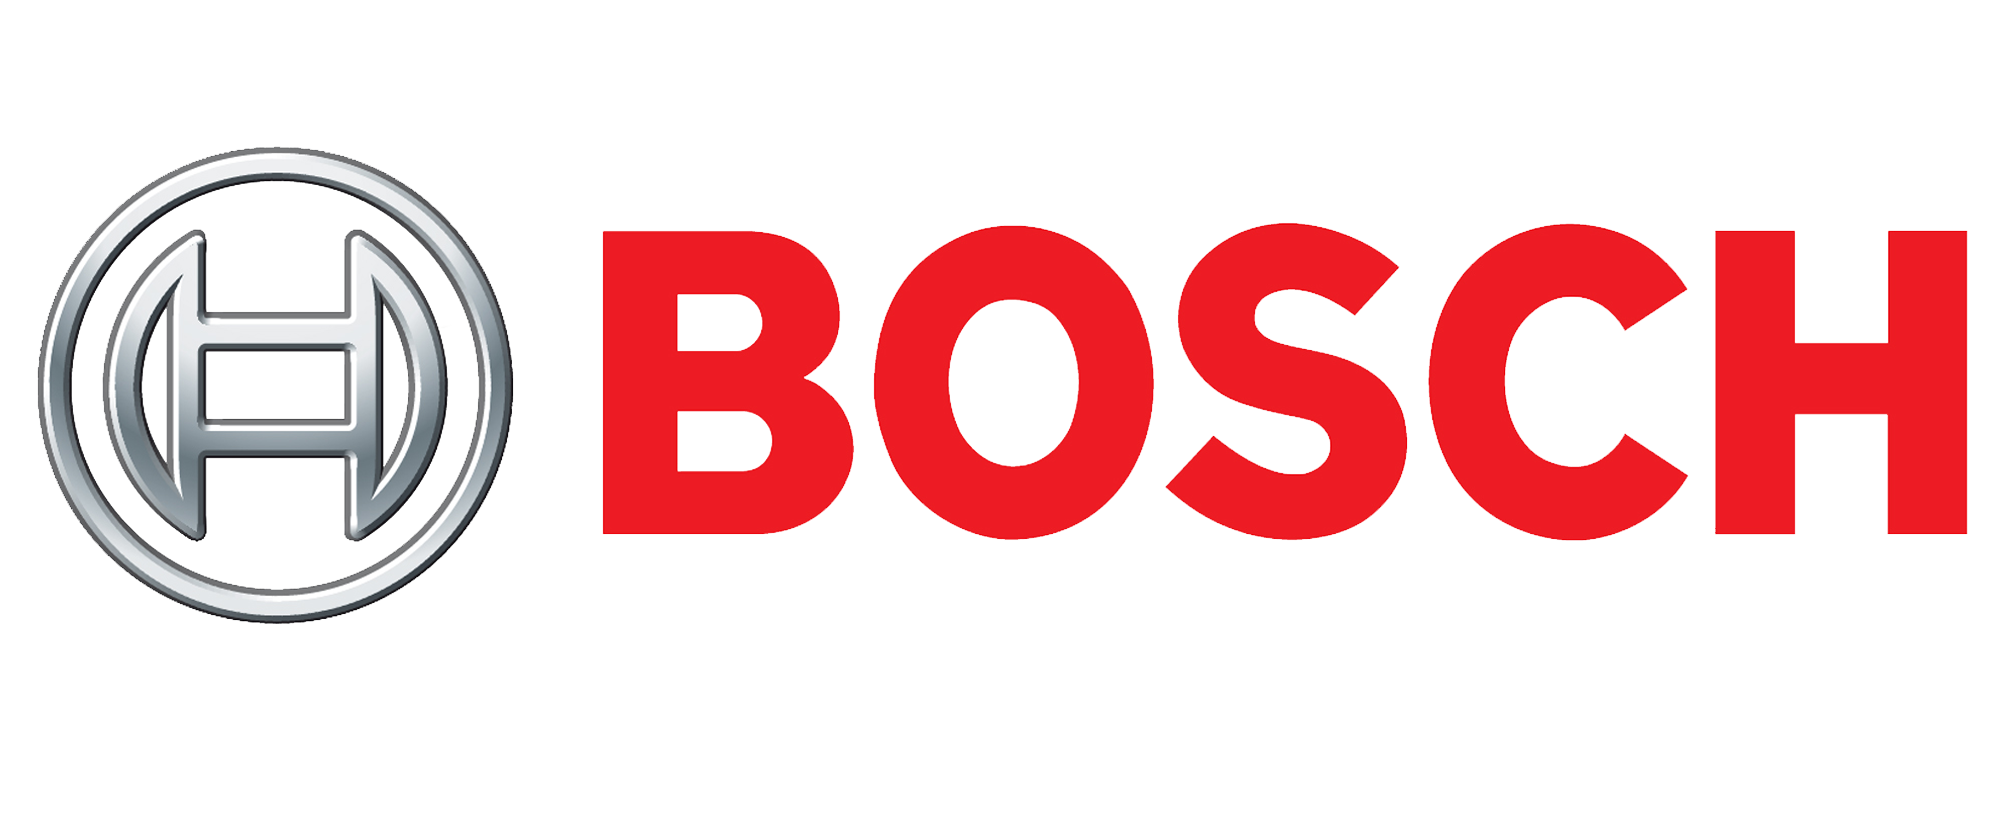 Bosch Dizi Konusu, Oyuncuları ve Tanıtımı